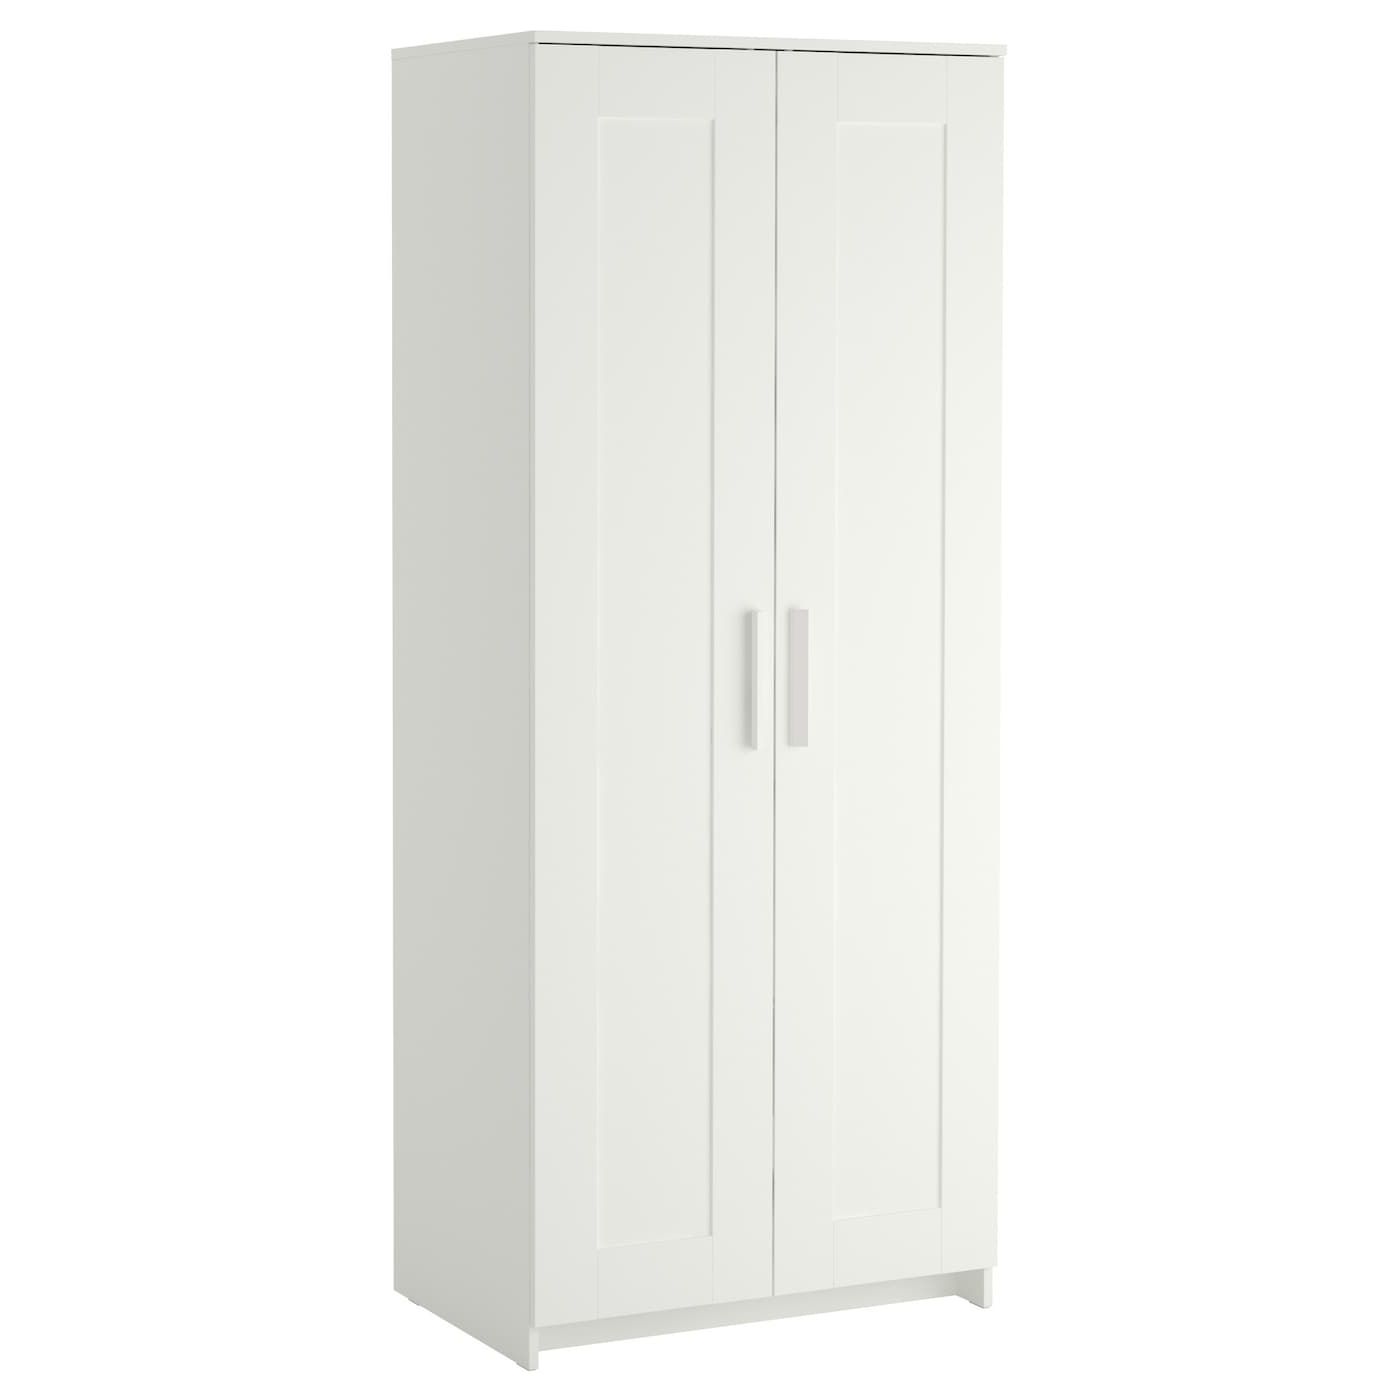 Brimnes Wardrobe With 2 Doors, White, 30 3/4x74 3/4" – Ikea In 2 Door Wardrobes (Gallery 5 of 20)